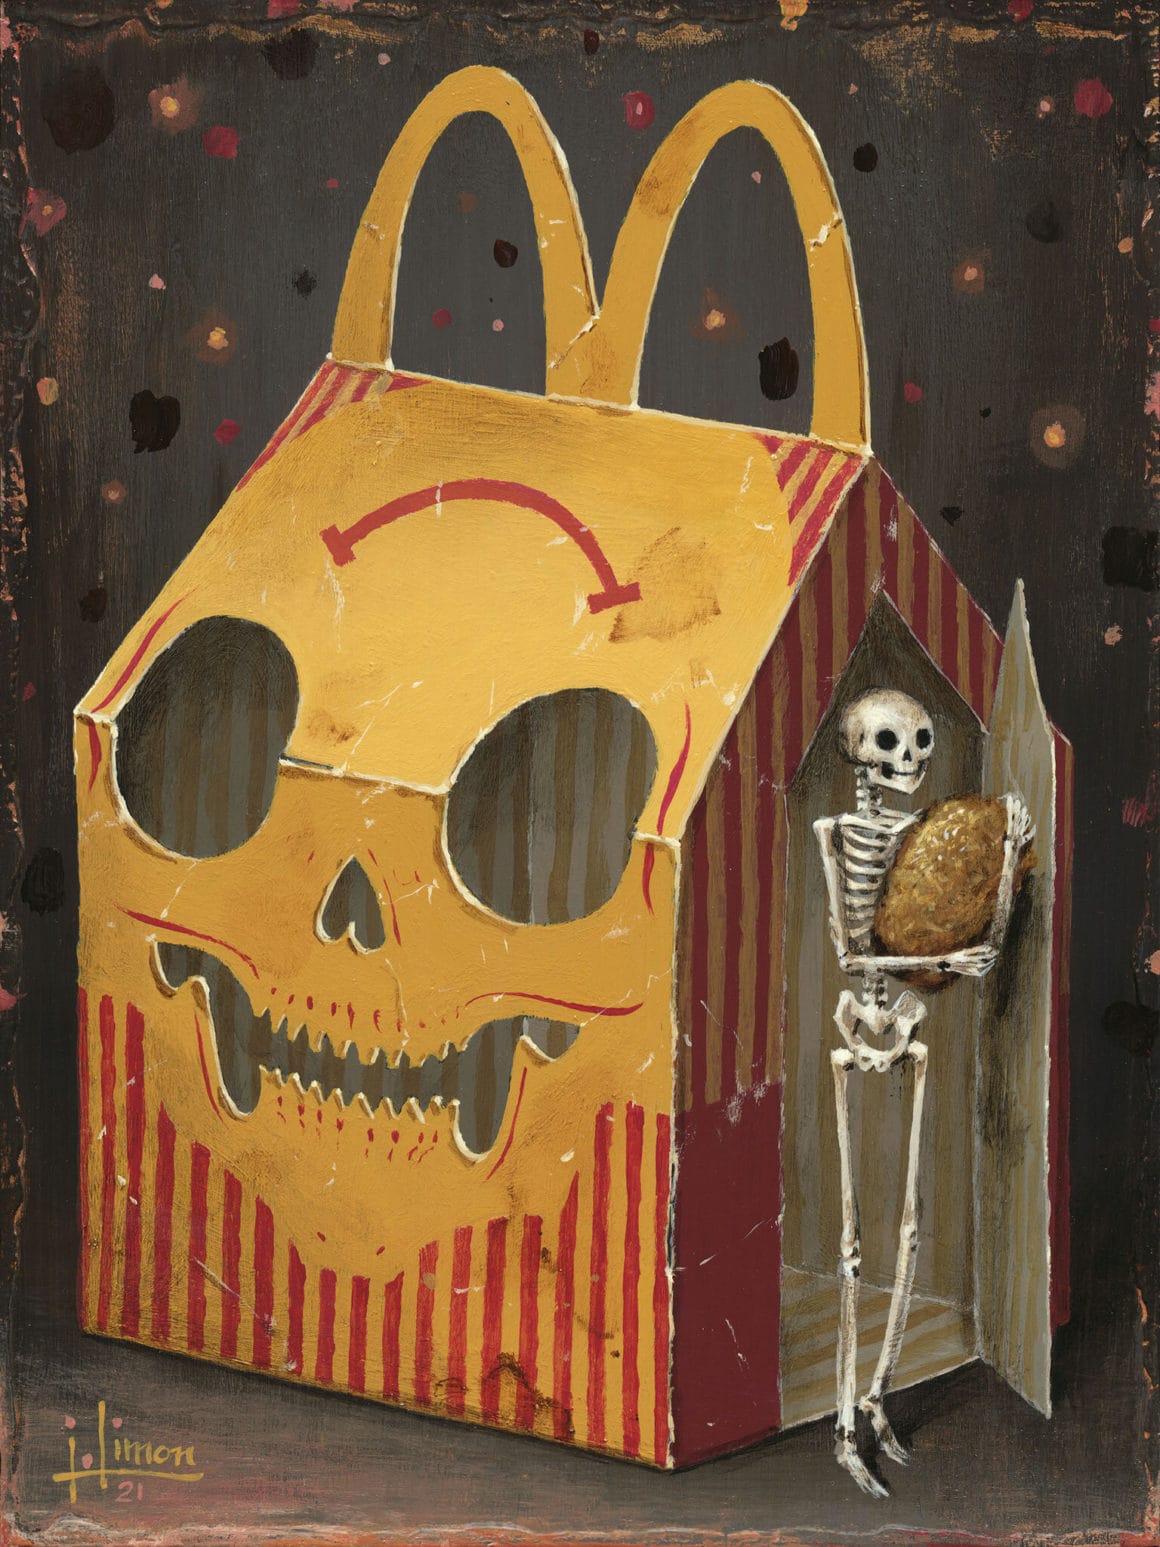 Ce tableau représente un squelette dans un happy meal.